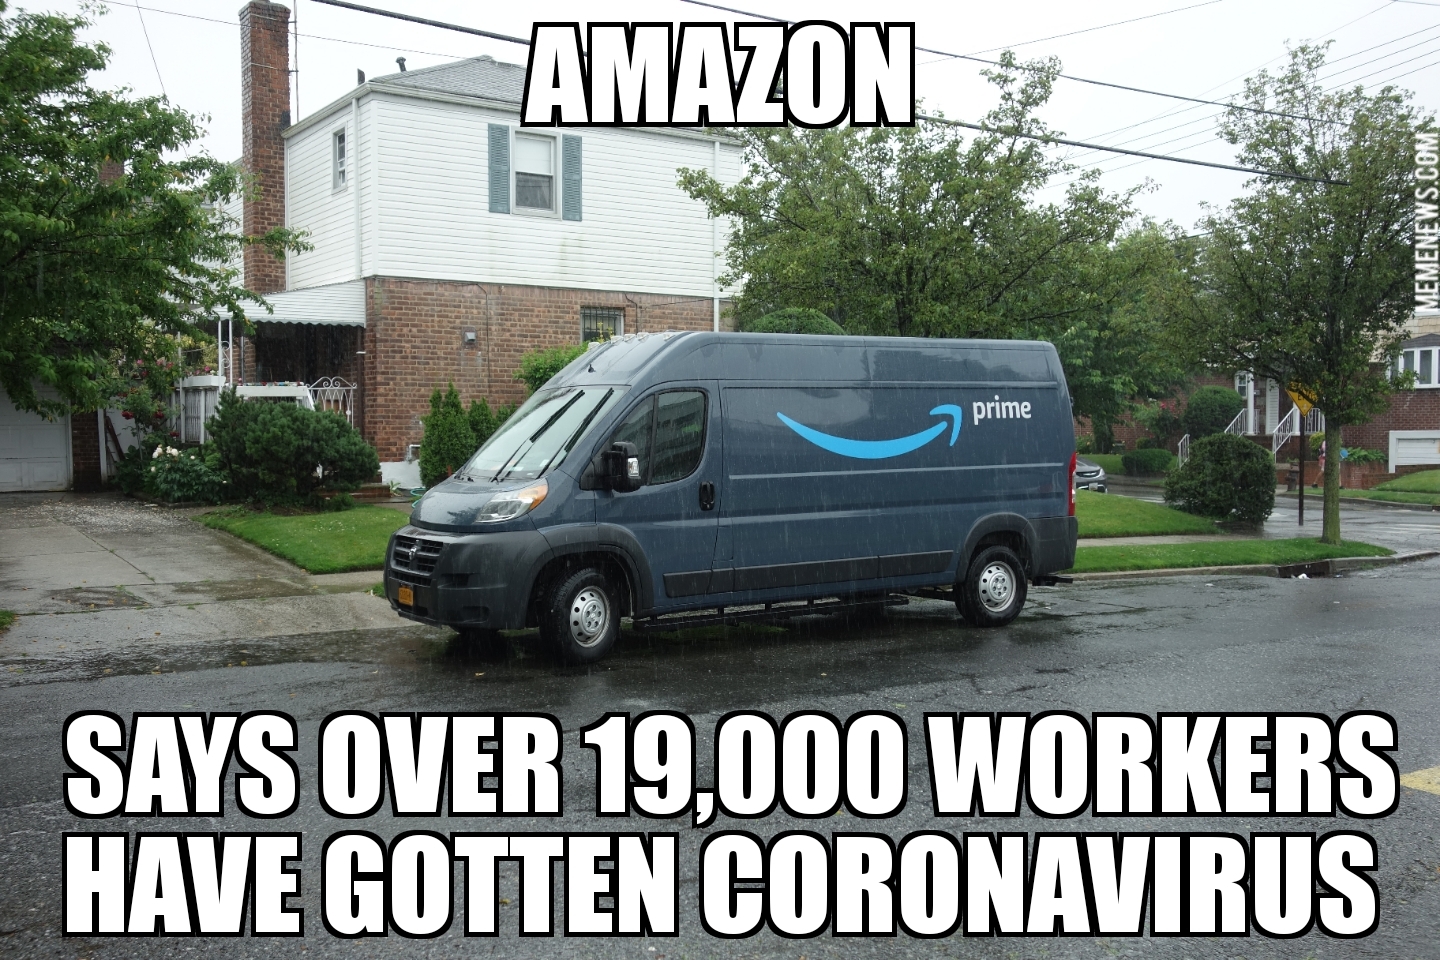 19,000 Amazon workers got coronavirus